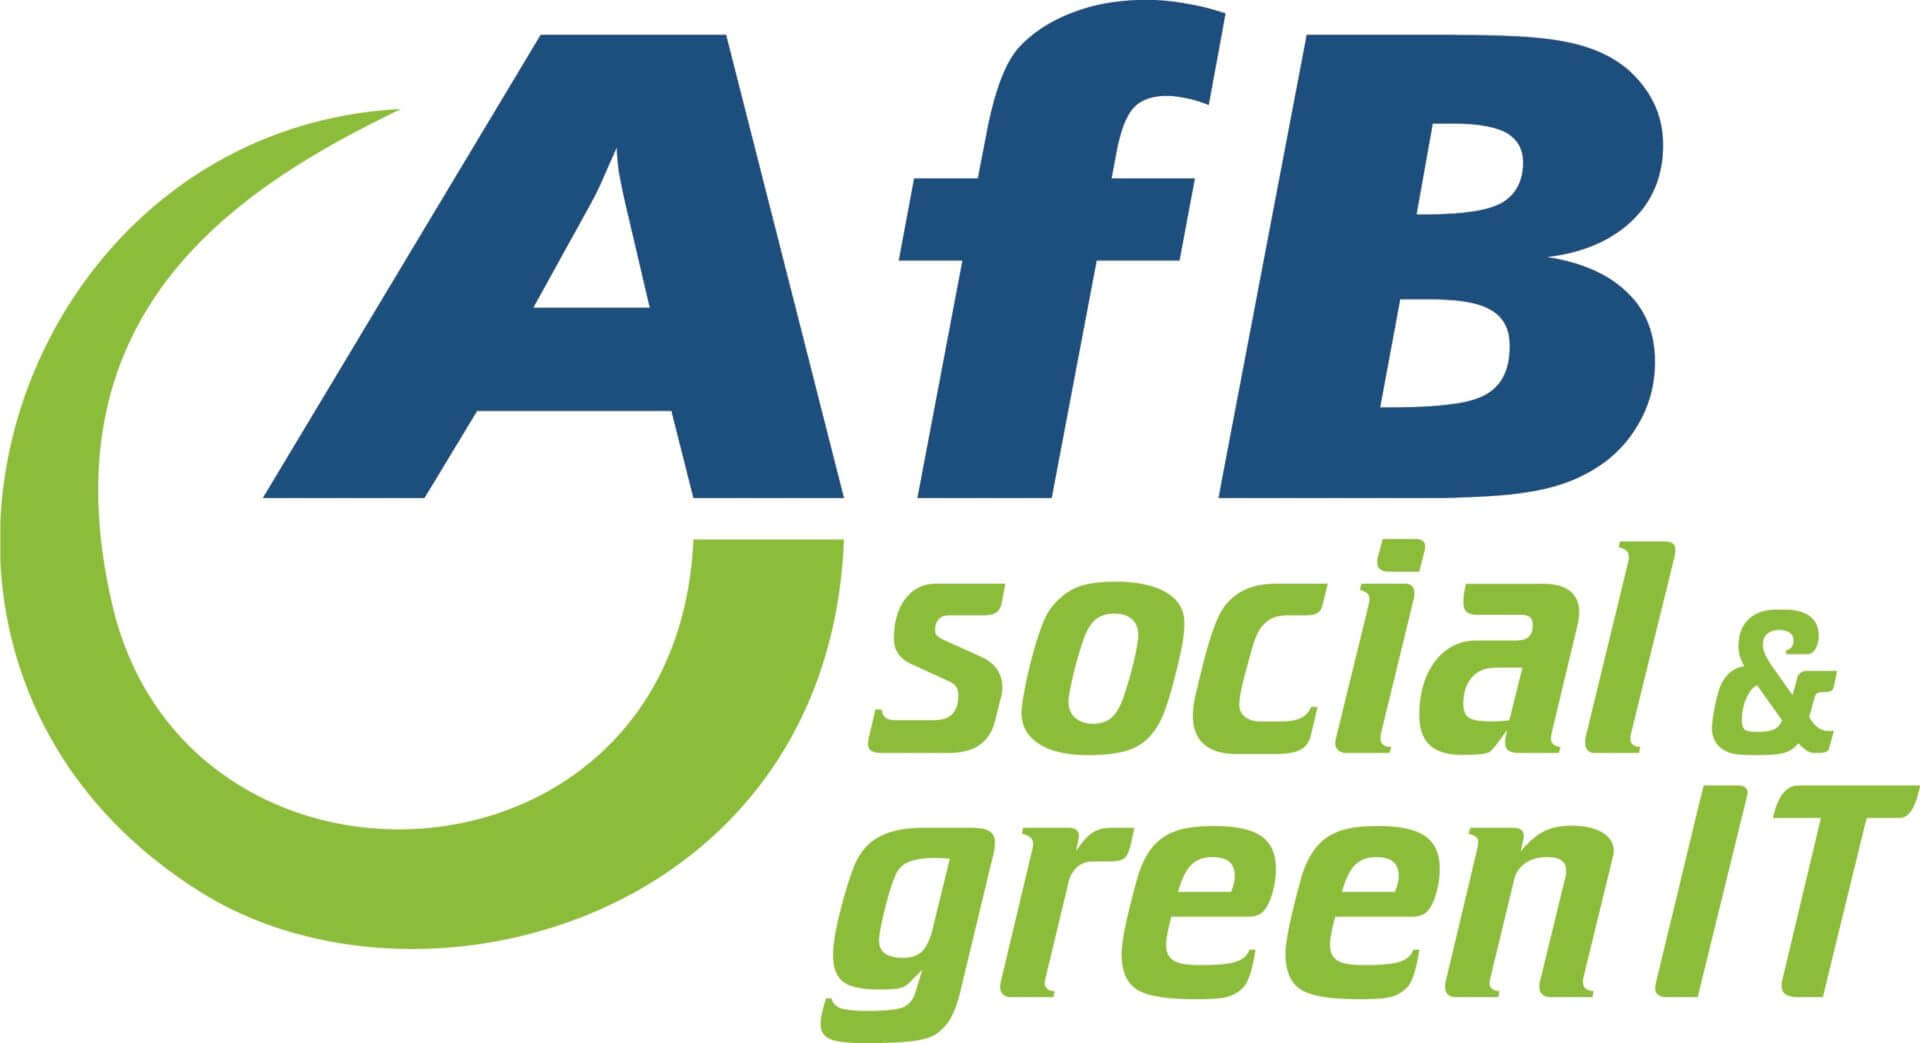 Logo AfB